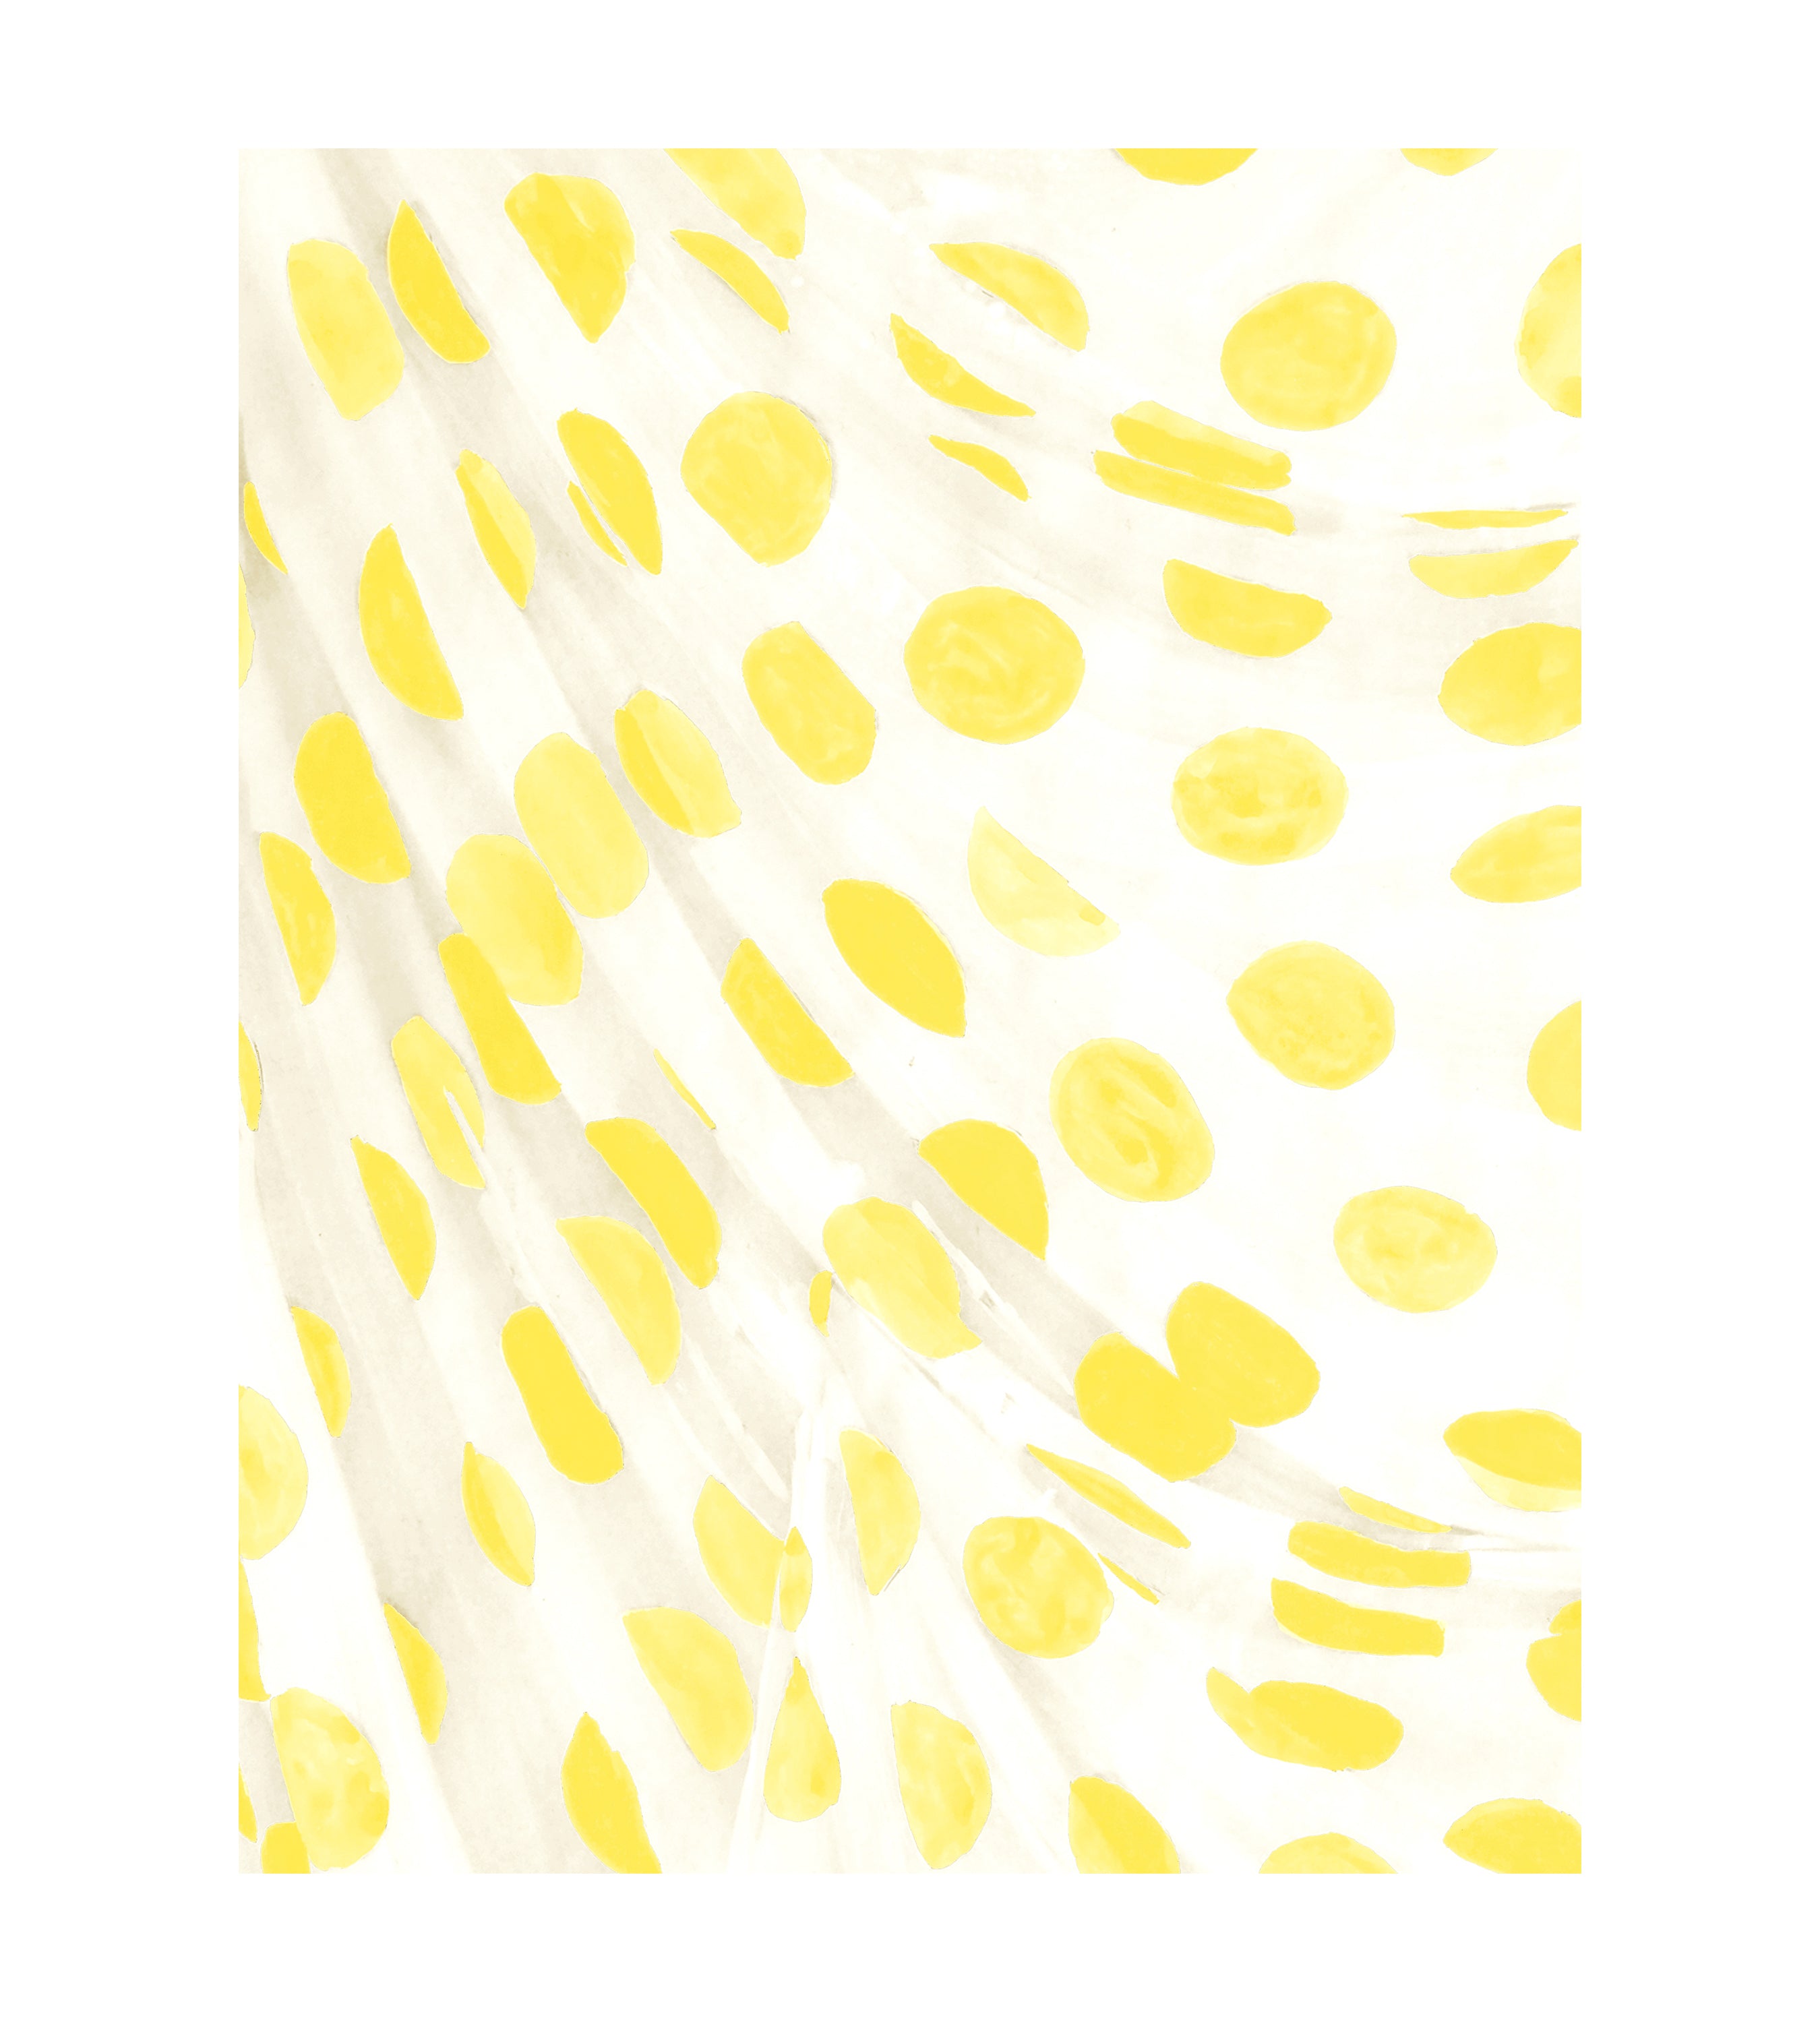 Audrey Dot Yellow Wallpaper